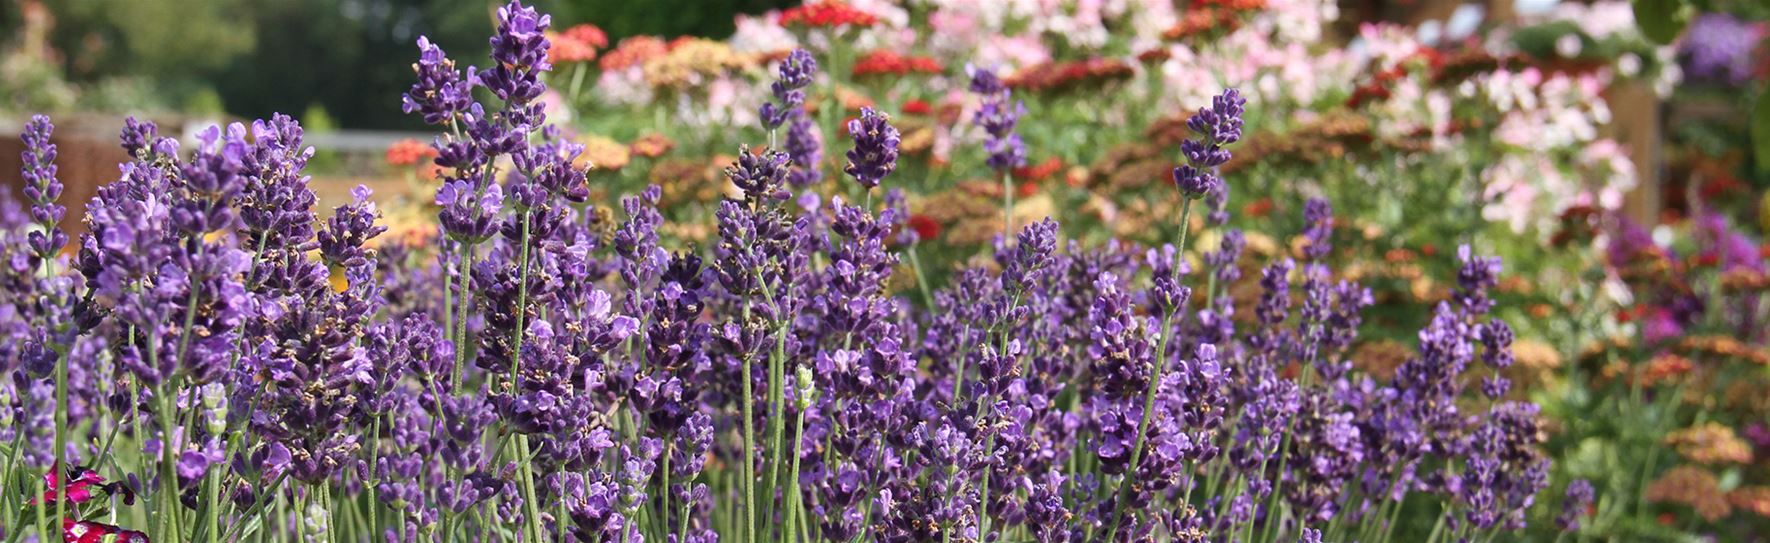 Lavendel-Vienco.jpg